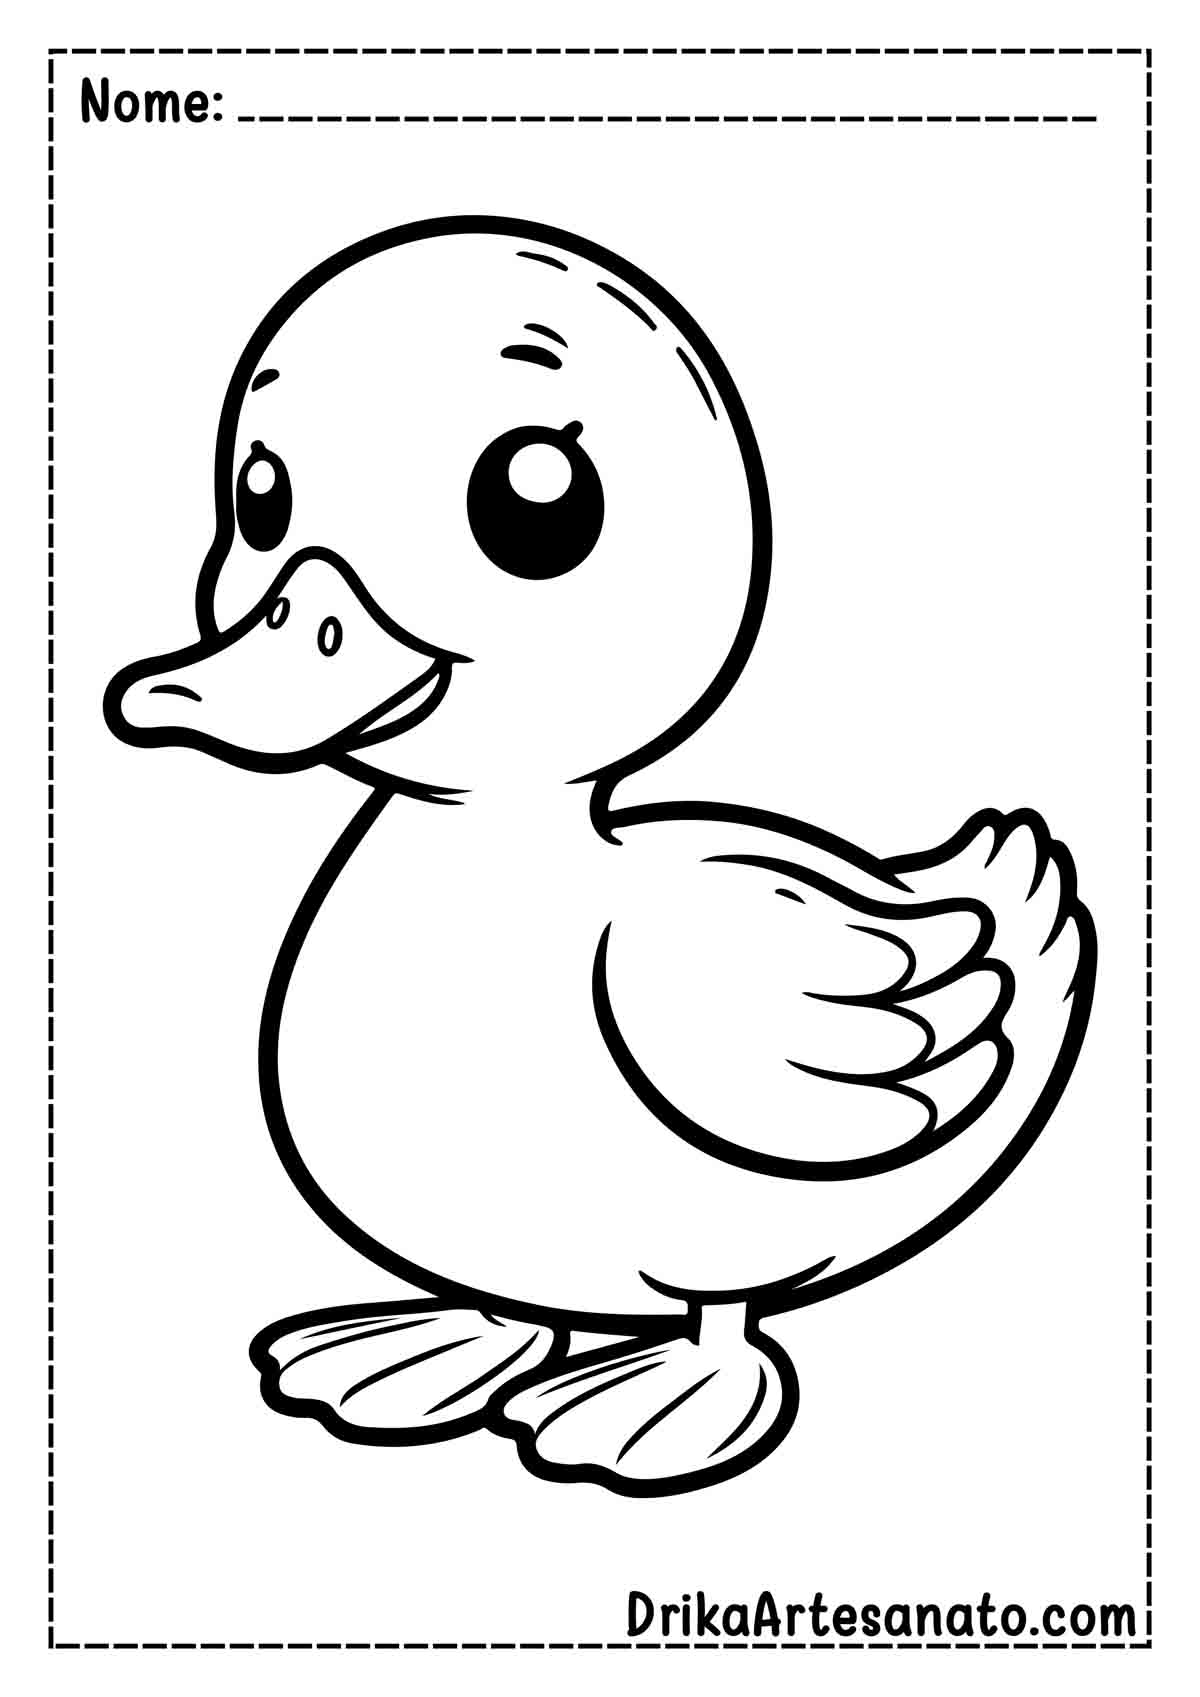 Desenho de Pato Infantil para Imprimir